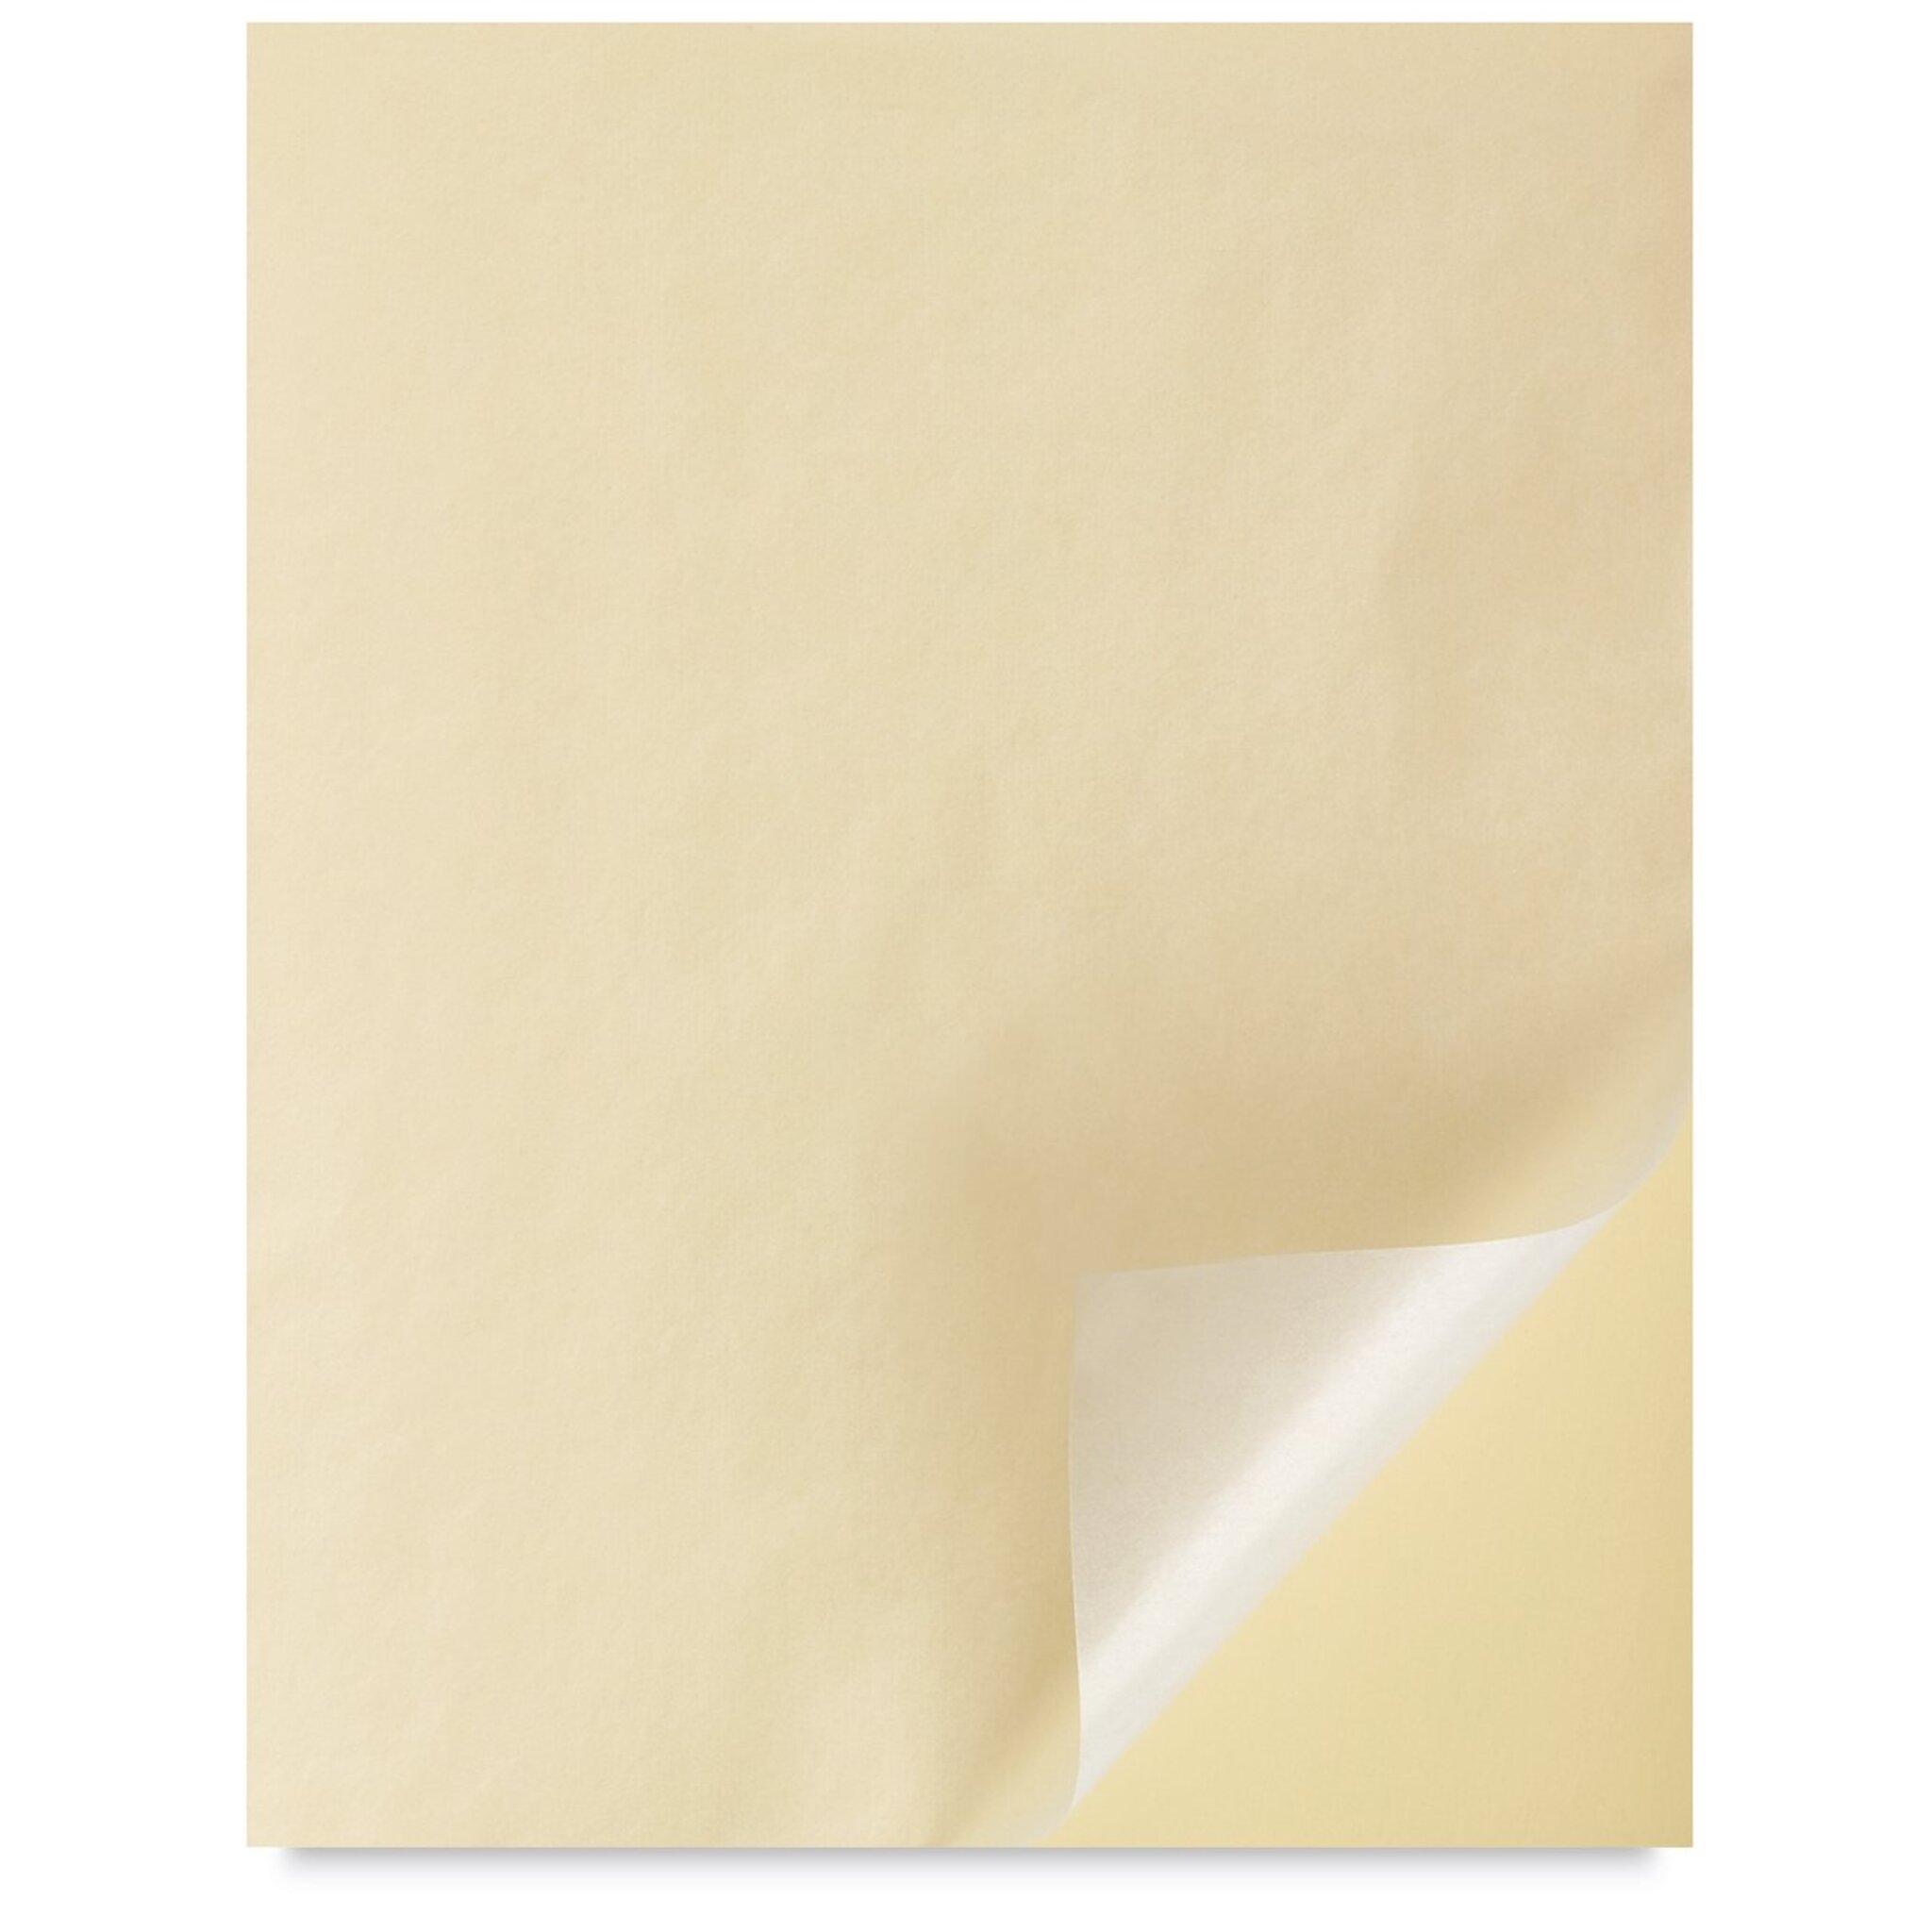 Clairefontaine Premium Pastelmat Pad, 9 x 12, PL4 12 sheets - Reddi-Arts